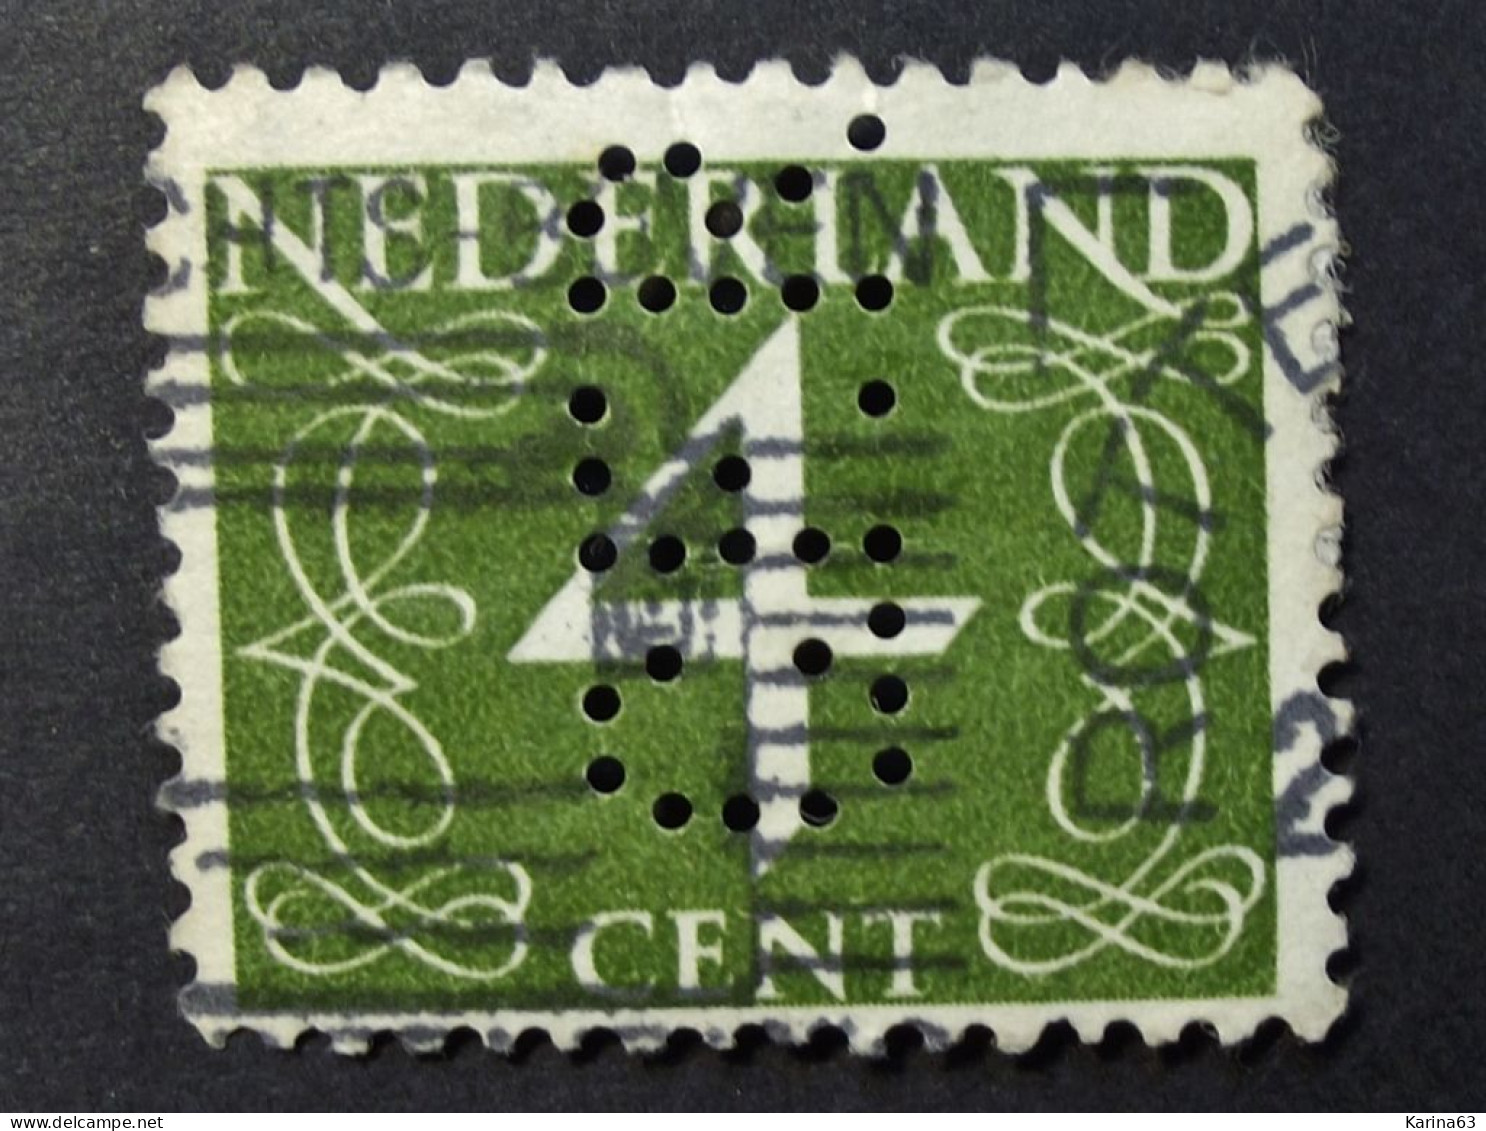 Nederland - Pays-Bas - 1946 -  Perfin - Lochung - C. F. R. -  N.V. Chemische Fabriek "Rotterdam" (Chefaro) - Cancelled - Gezähnt (perforiert)